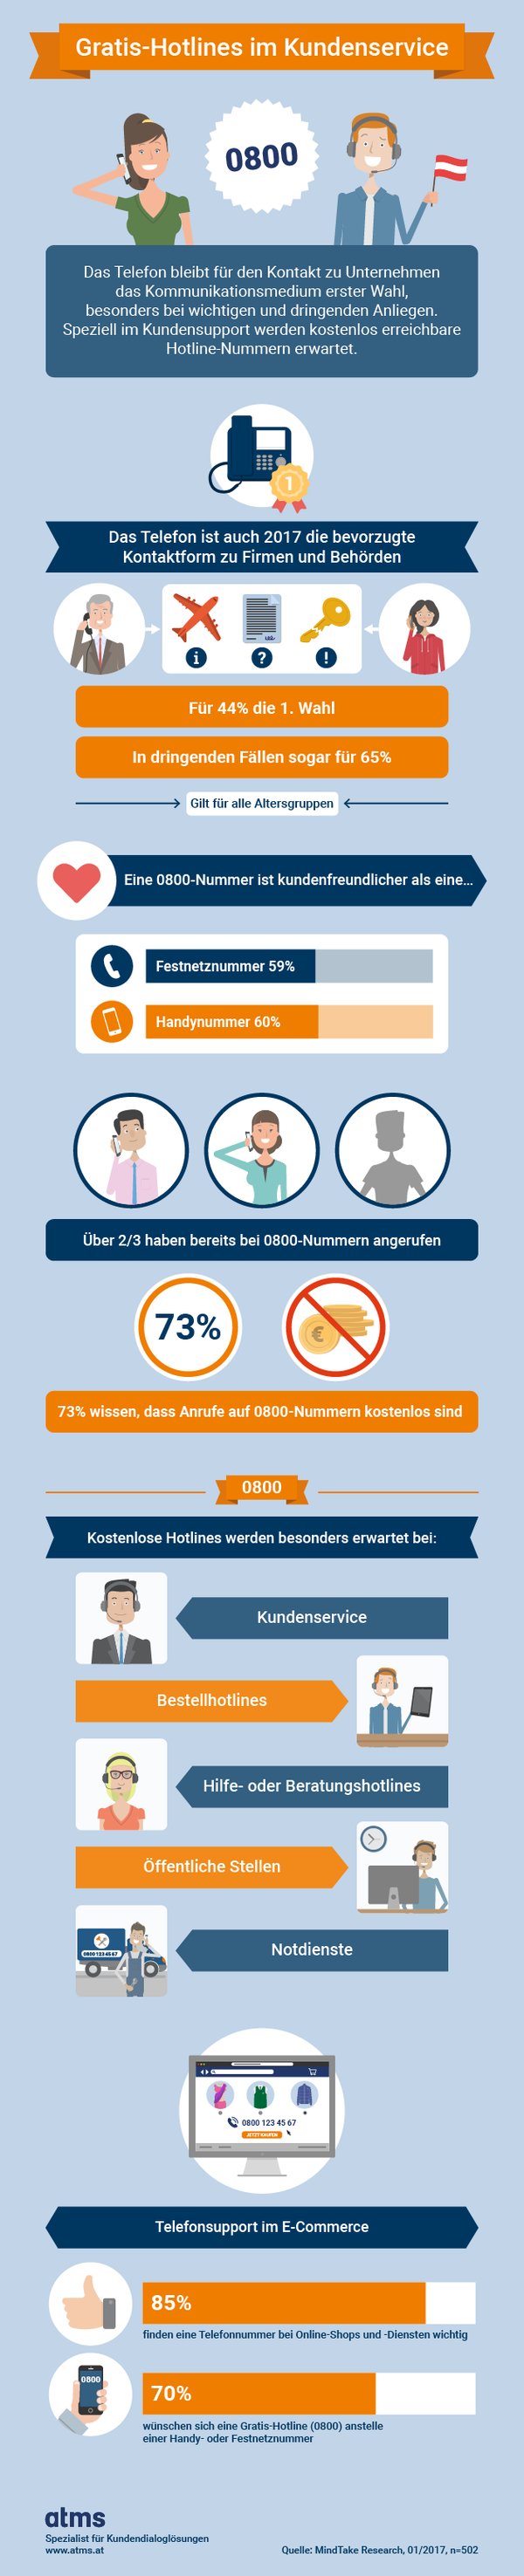 Infografik: Gratis Hotlines im Kundenservice (c) atms